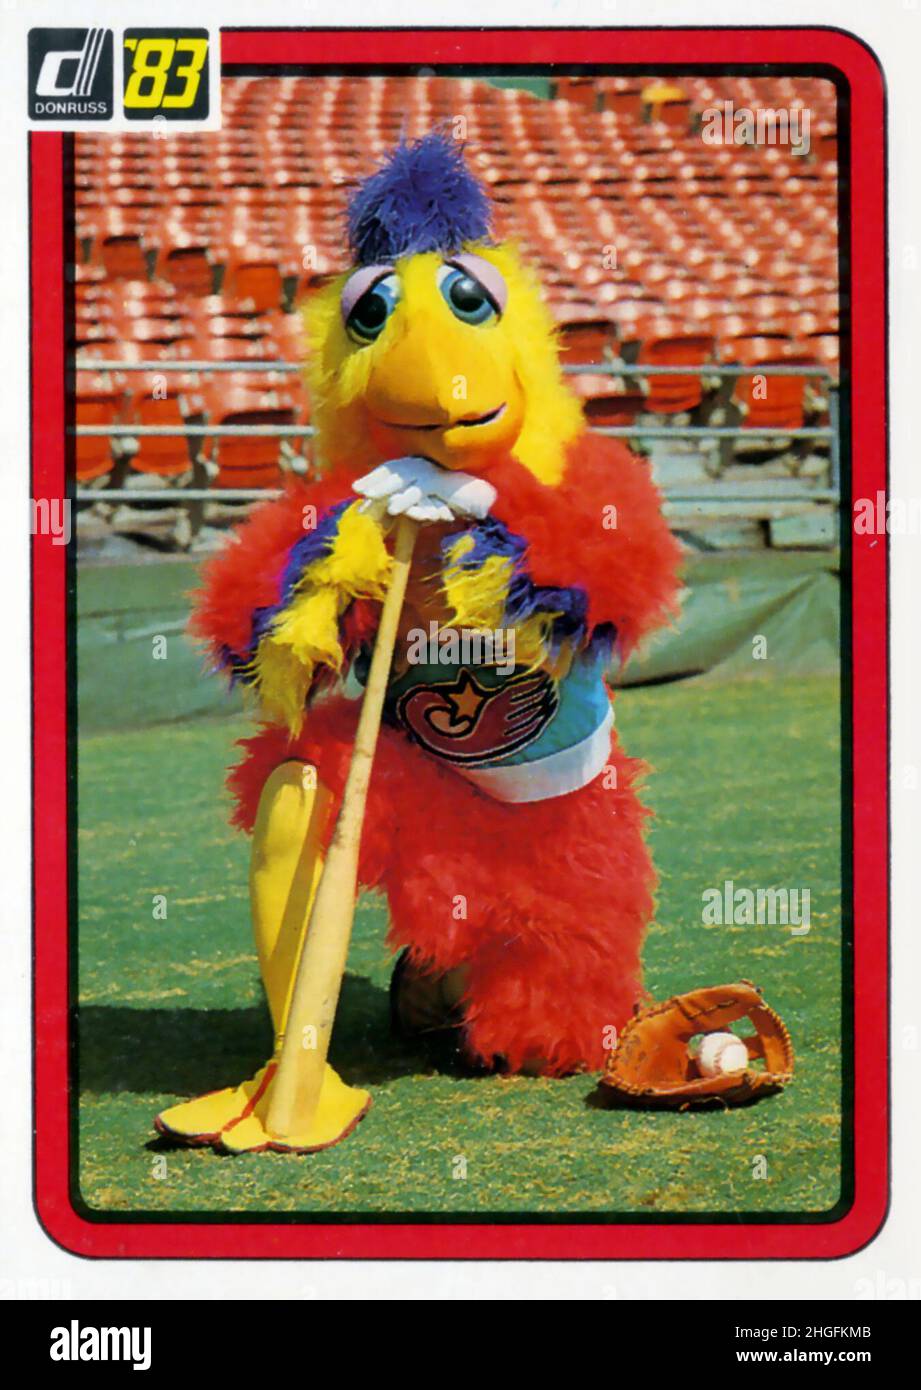 1983 Donruss Baseballkarte mit dem San Diego Huhn, dem Maskottchen der San Diego Padres, gespielt von Ted Giannoulas. Stockfoto